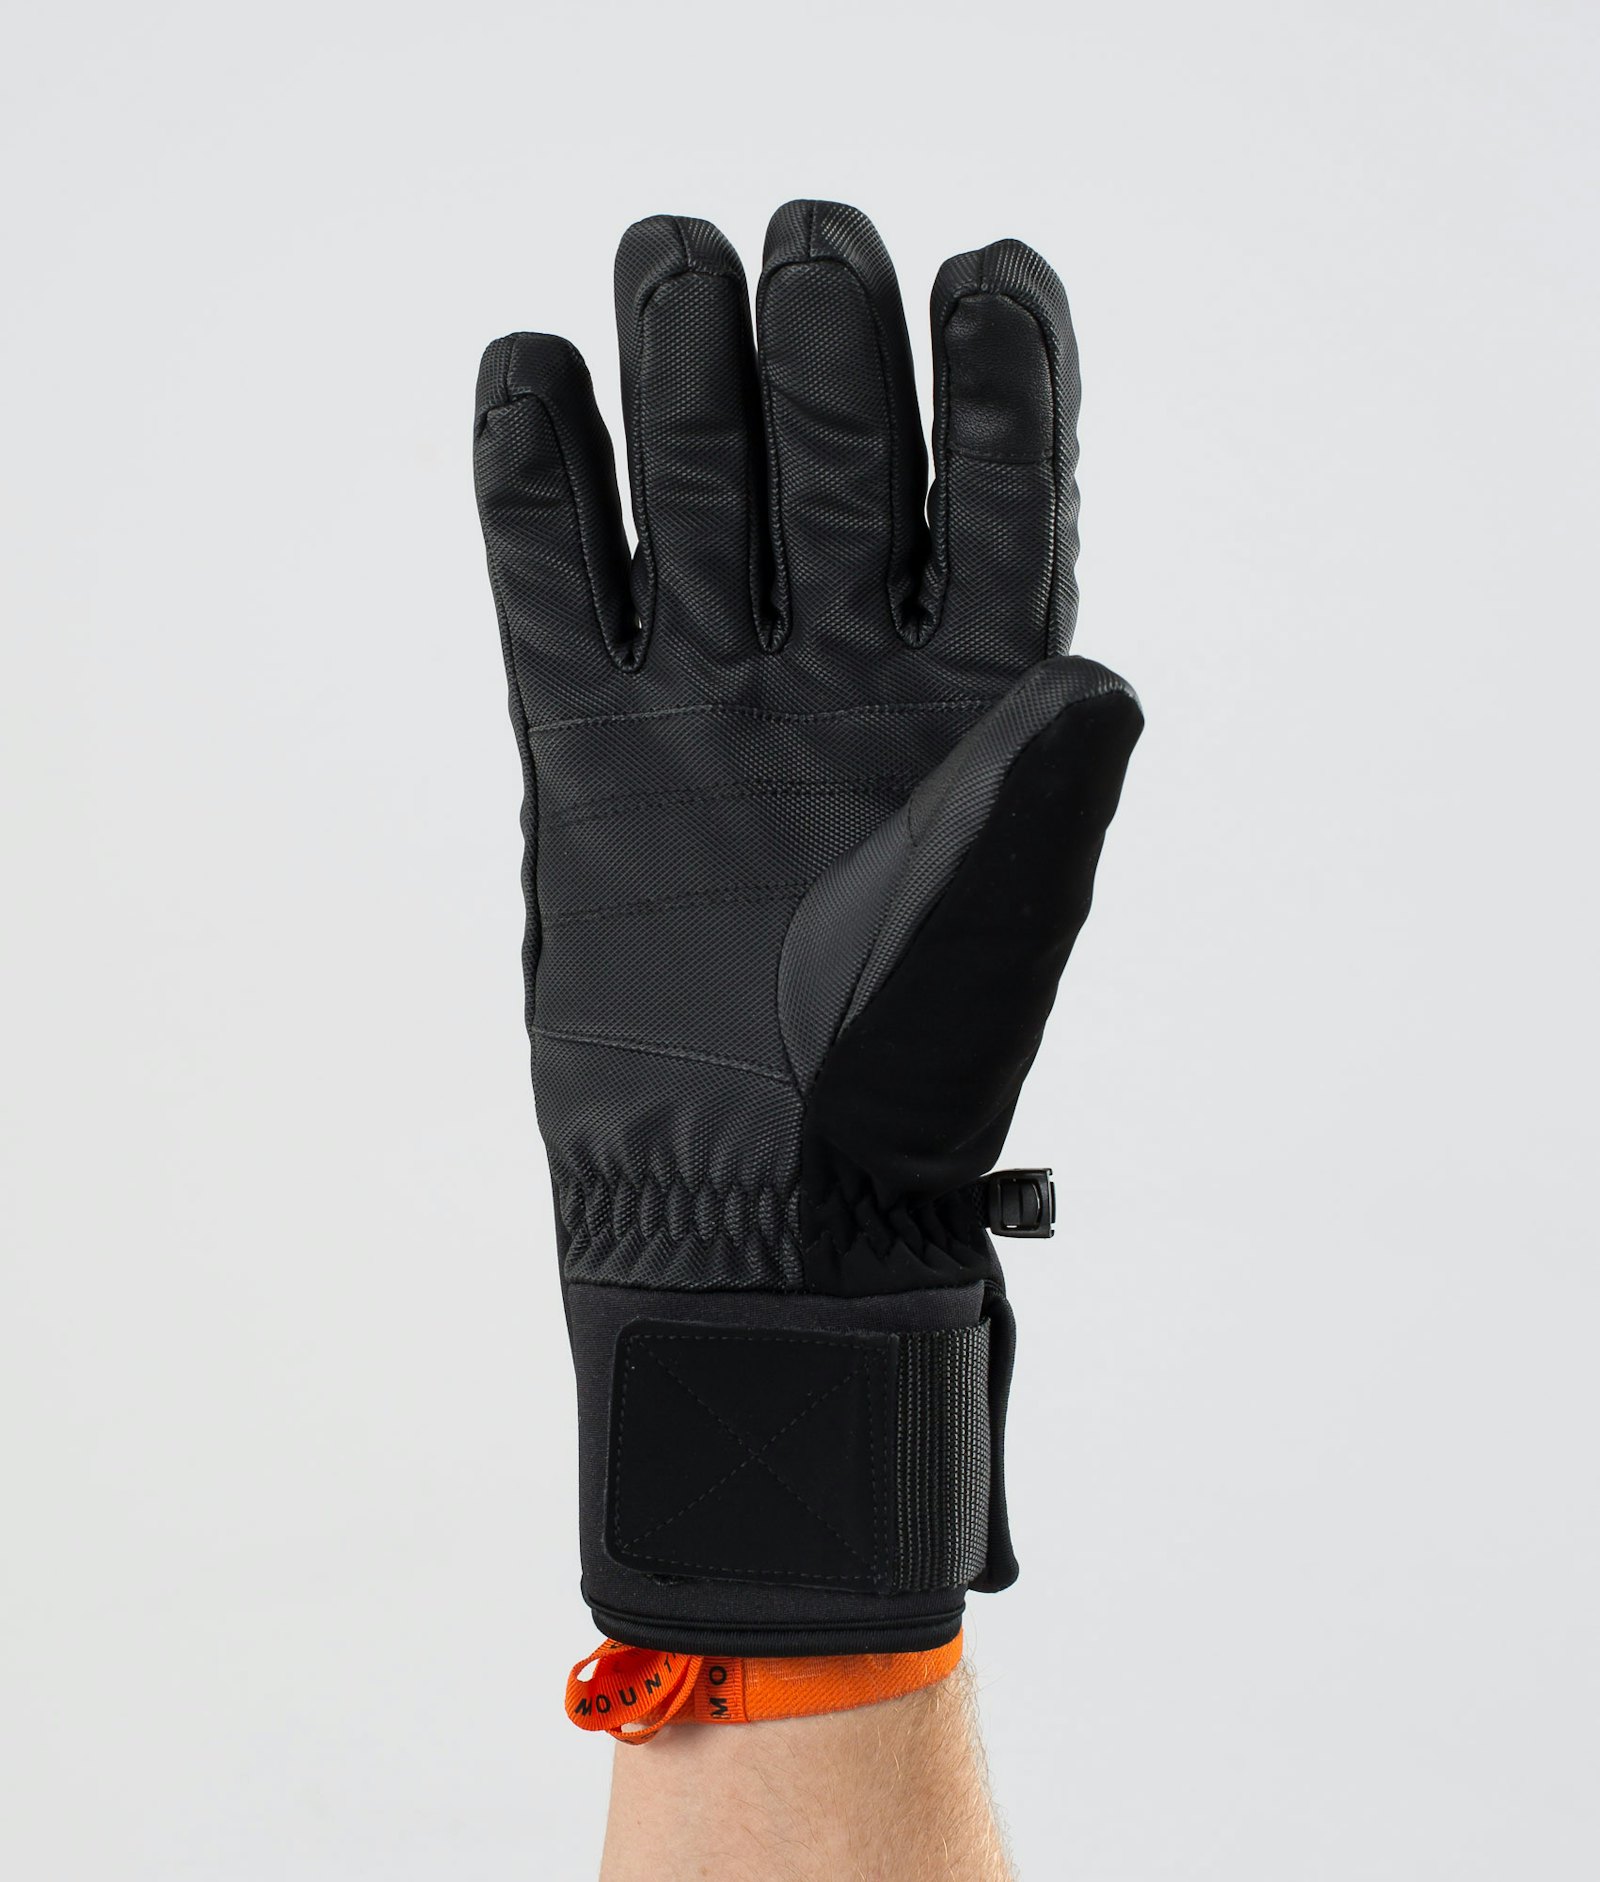 Kilo 2020 Ski Gloves Gold